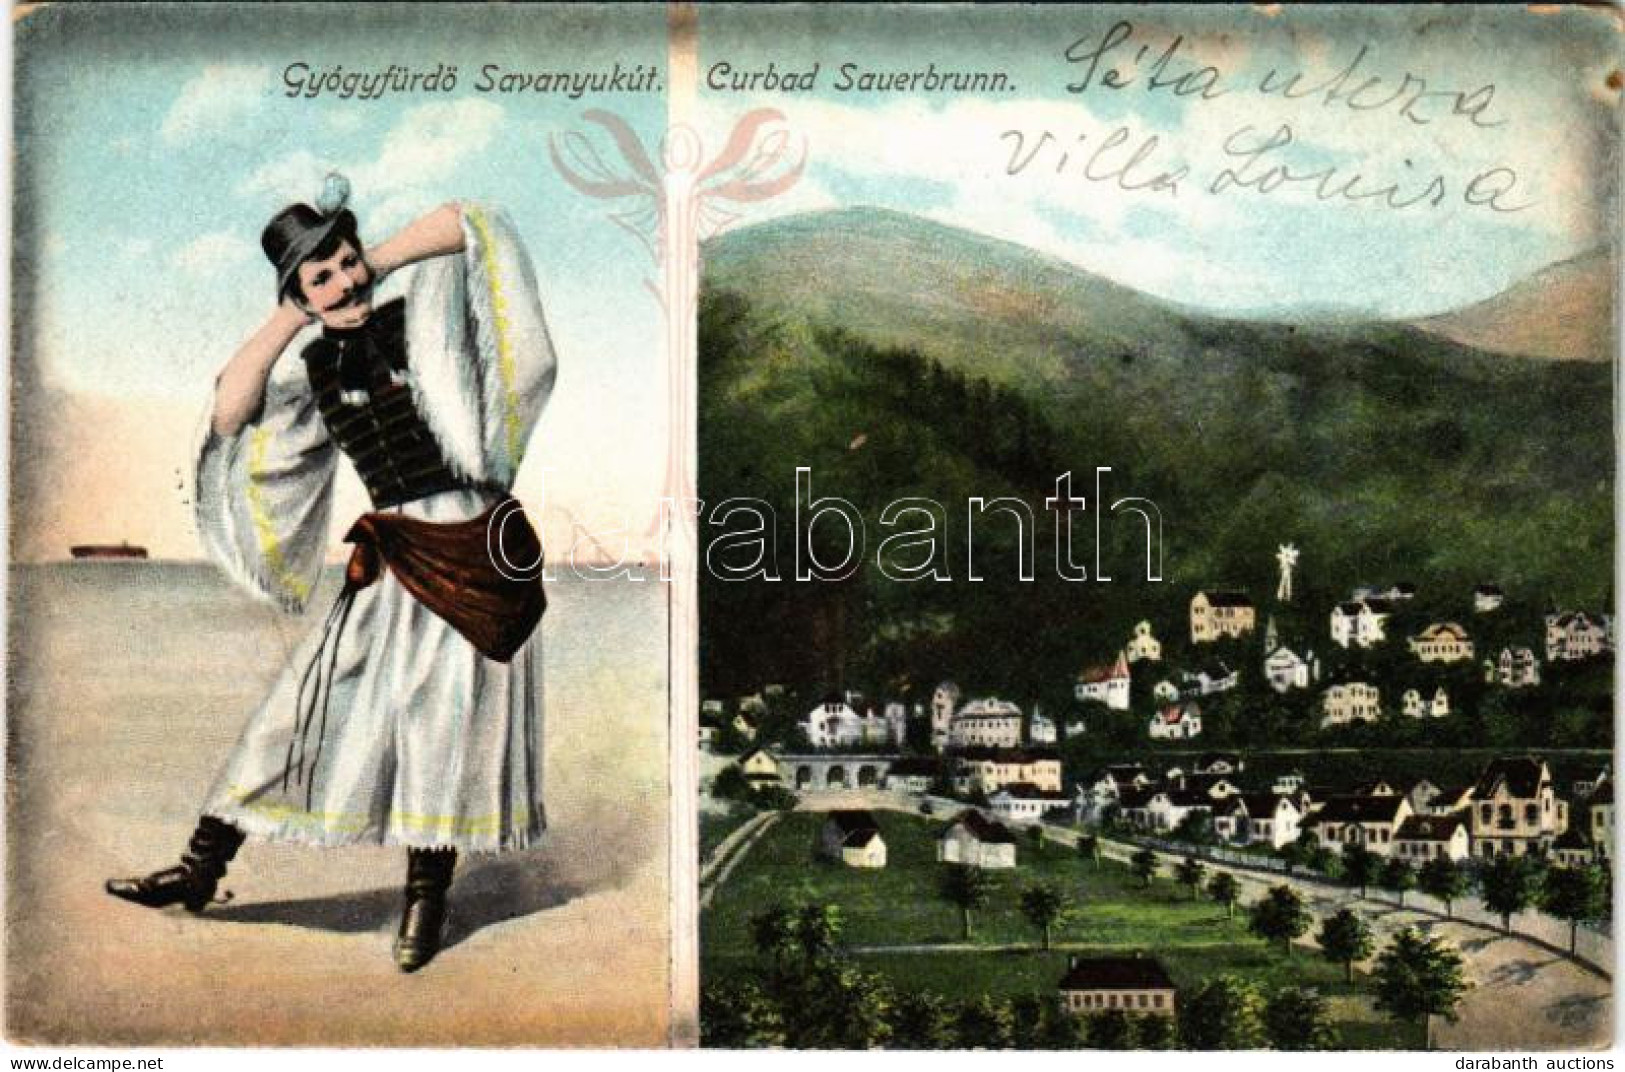 T2/T3 1910 Savanyúkút, Sauerbrunn; Gyógyfürdő, Folklór / Curbad / Spa, Folklore. M. Stelzmüller. Art Nouveau - Non Classificati